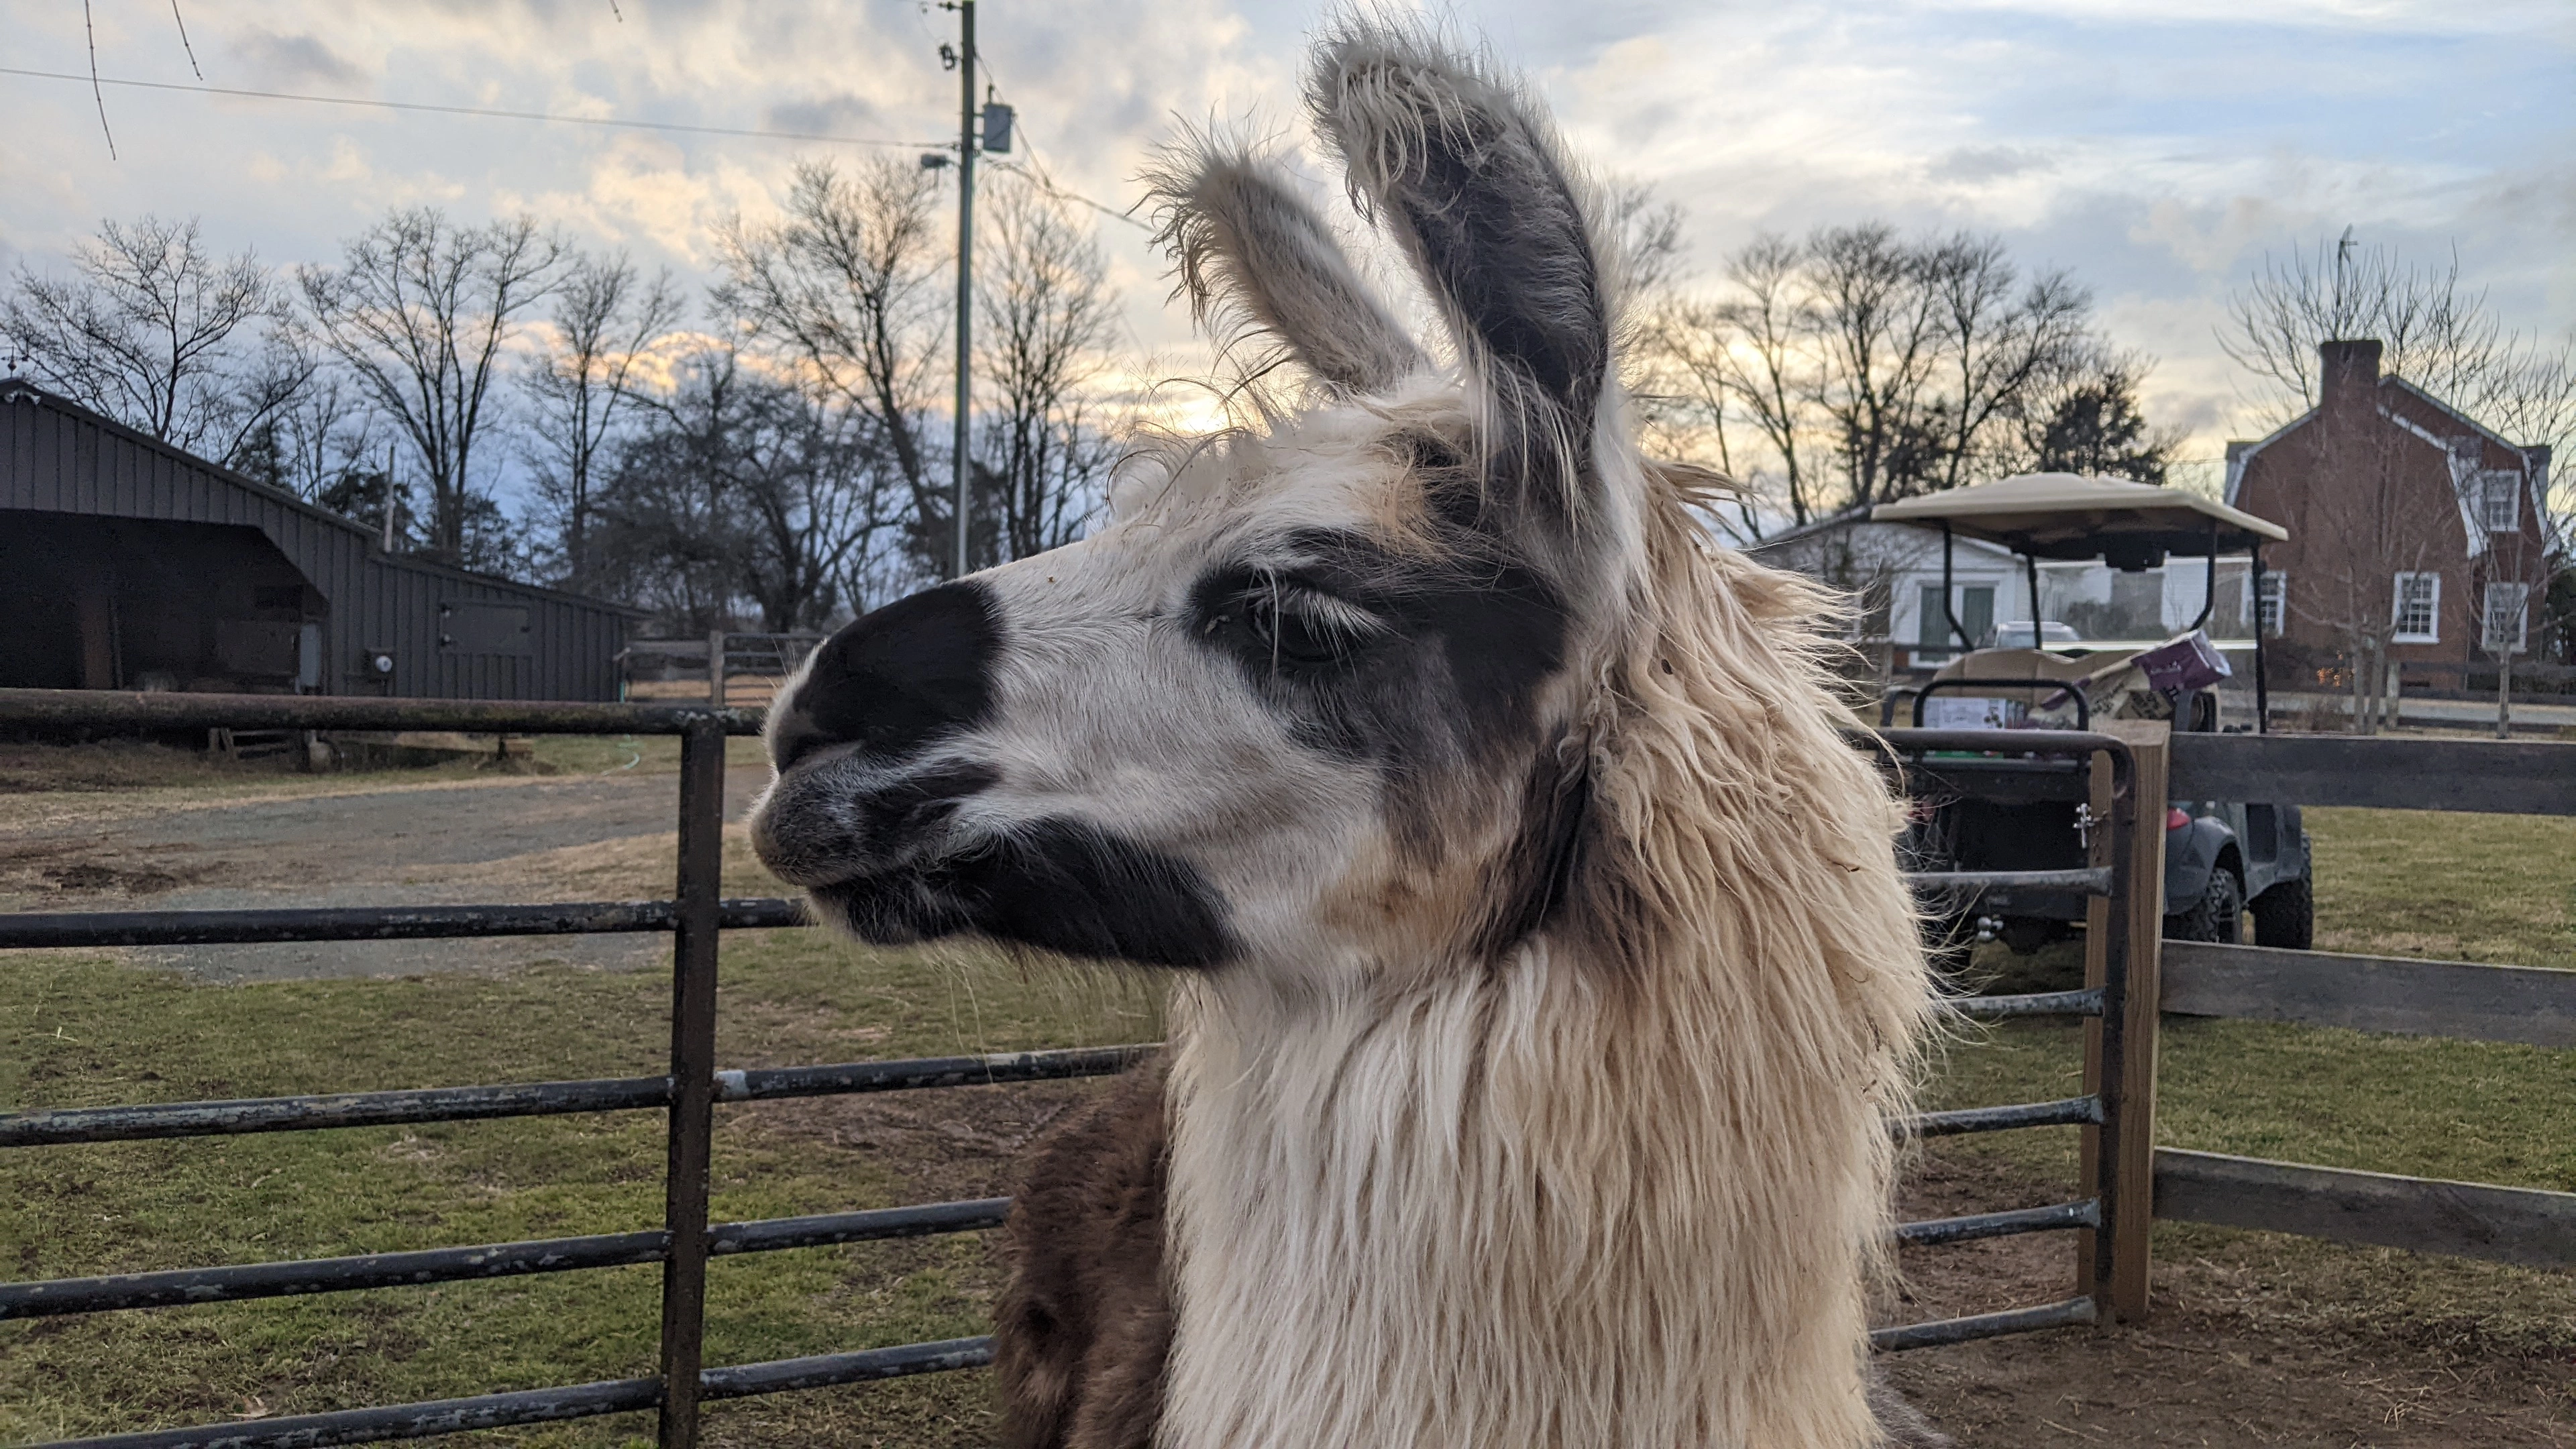 An image of a llama named Miss Bennett